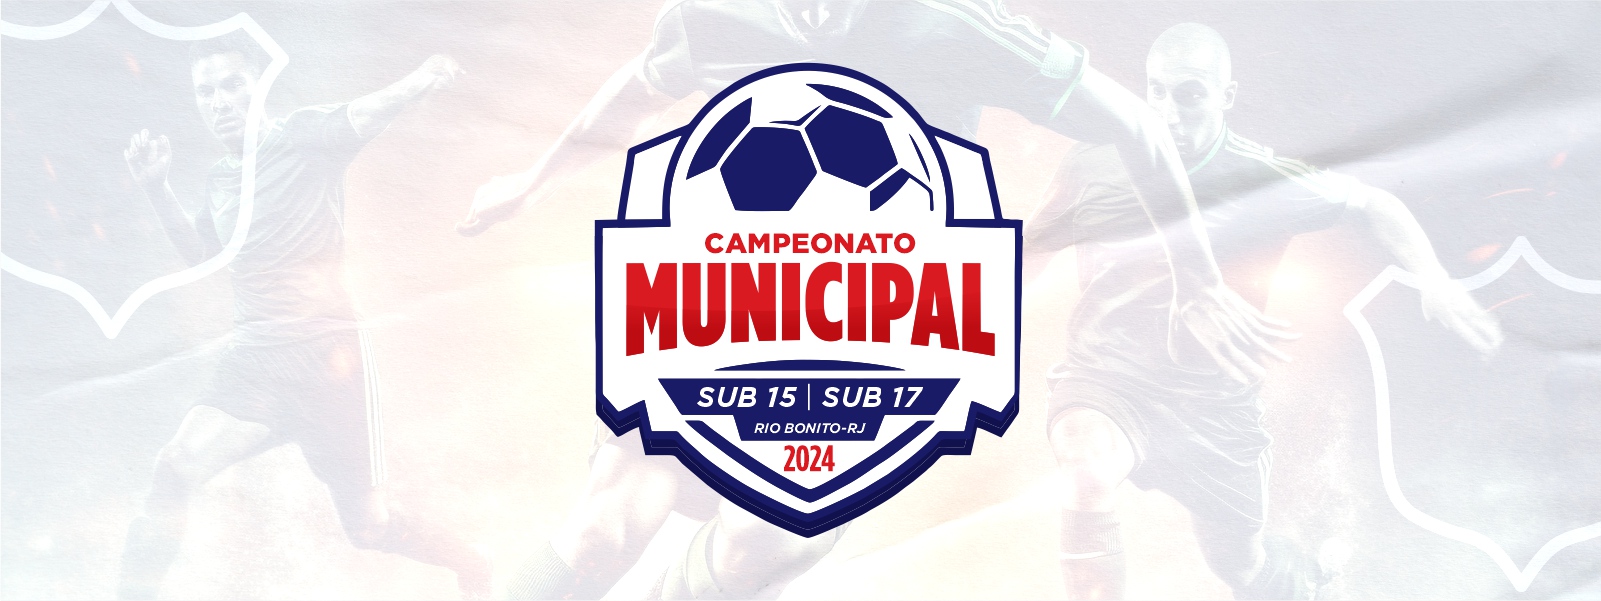 Campeonato Municipal Sub 15 e Sub 17